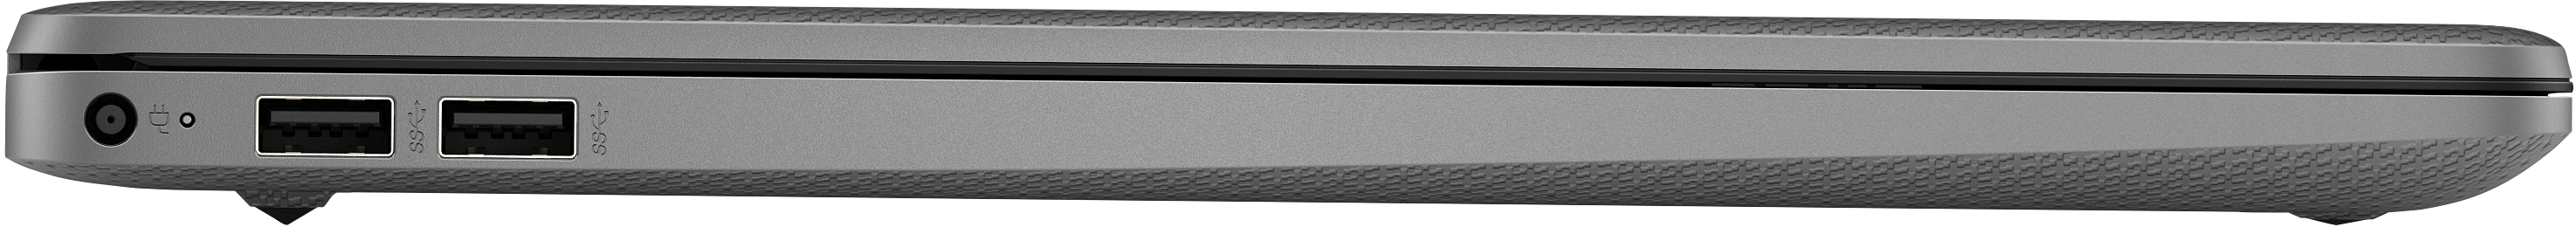 Notebook HP 15s-eq2083nl 5300U Computer portatile 39,6 cm (15.6